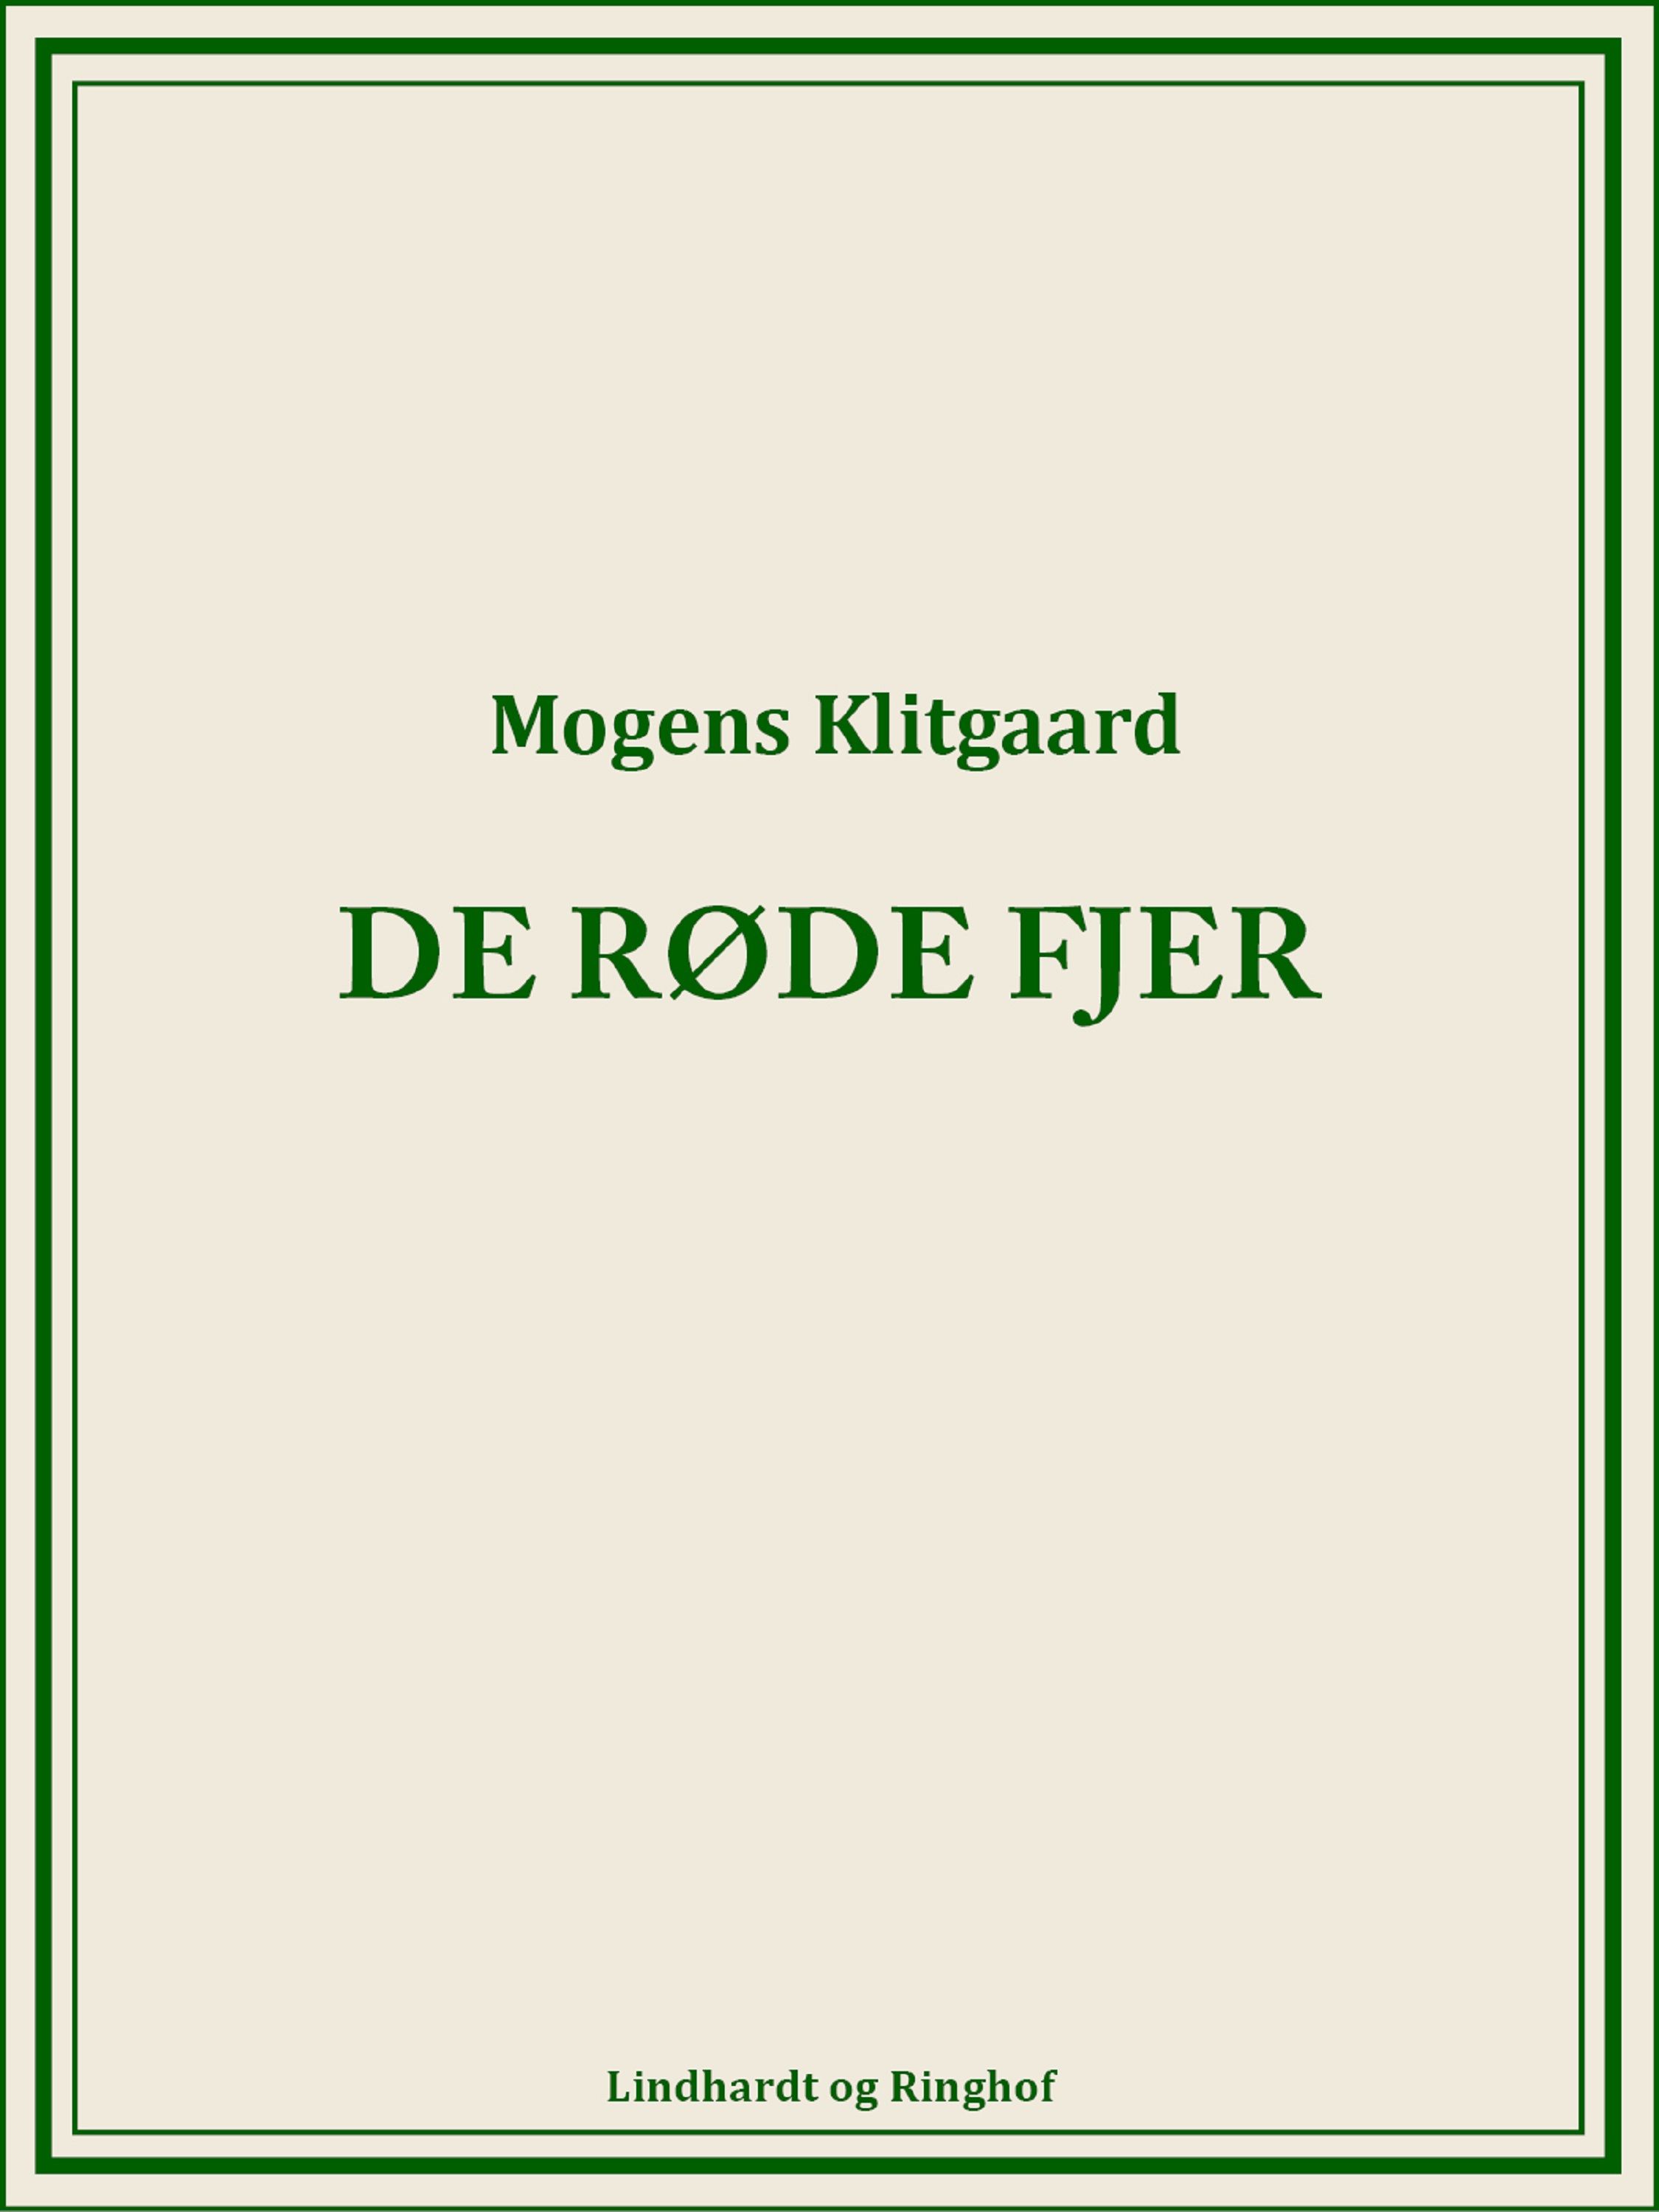 De røde fjer, lydbog af Mogens Klitgaard